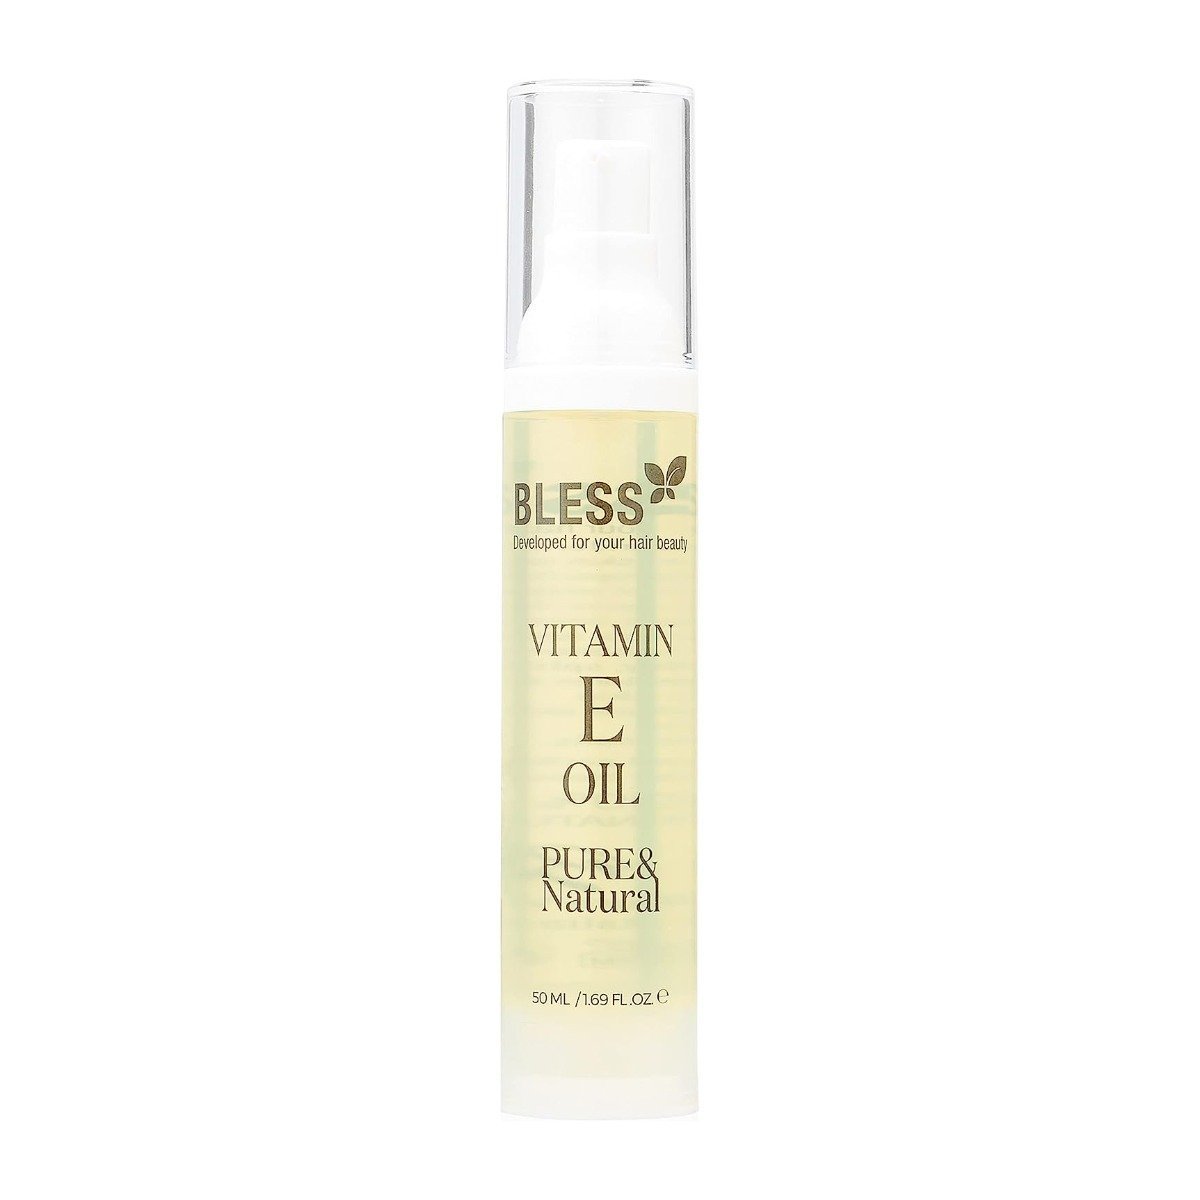 Bless Vitamin E Oil Hair, Skin & Nails – 50ml - Bloom Pharmacy